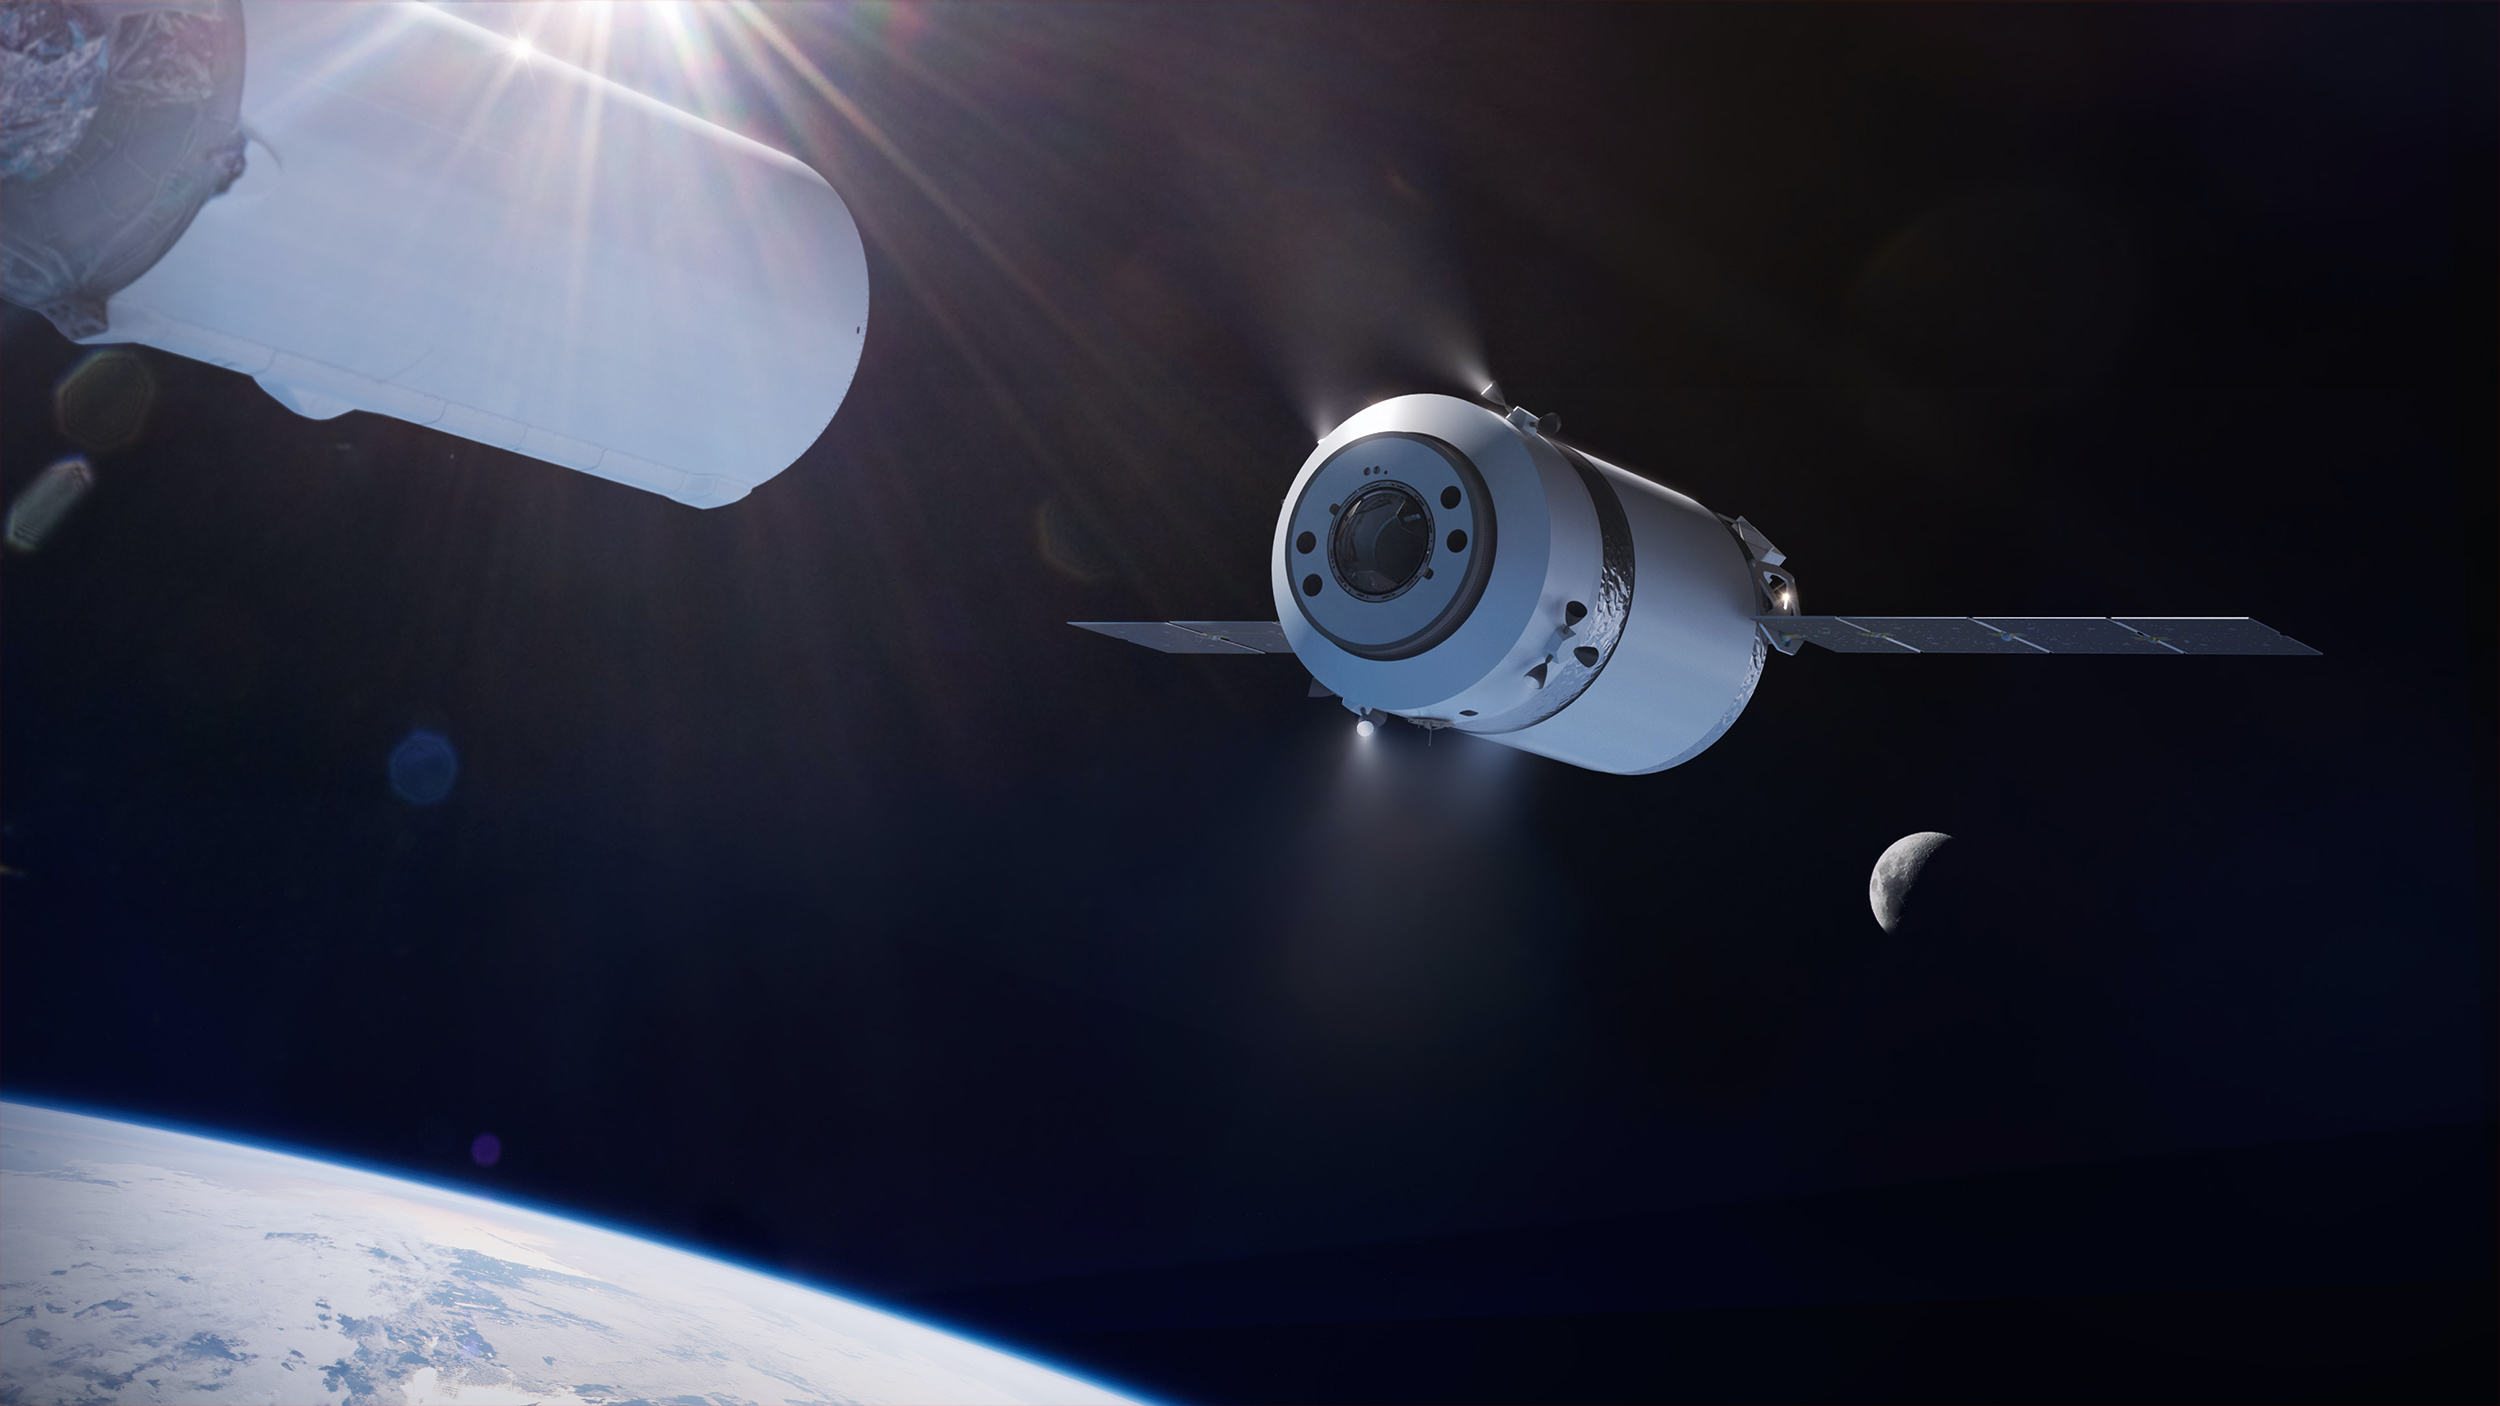 Vue d'artiste du cargo lunaire de SpaceX (Dragon XL), dérivé des capsules Dragon de transport de fret. © SpaceX